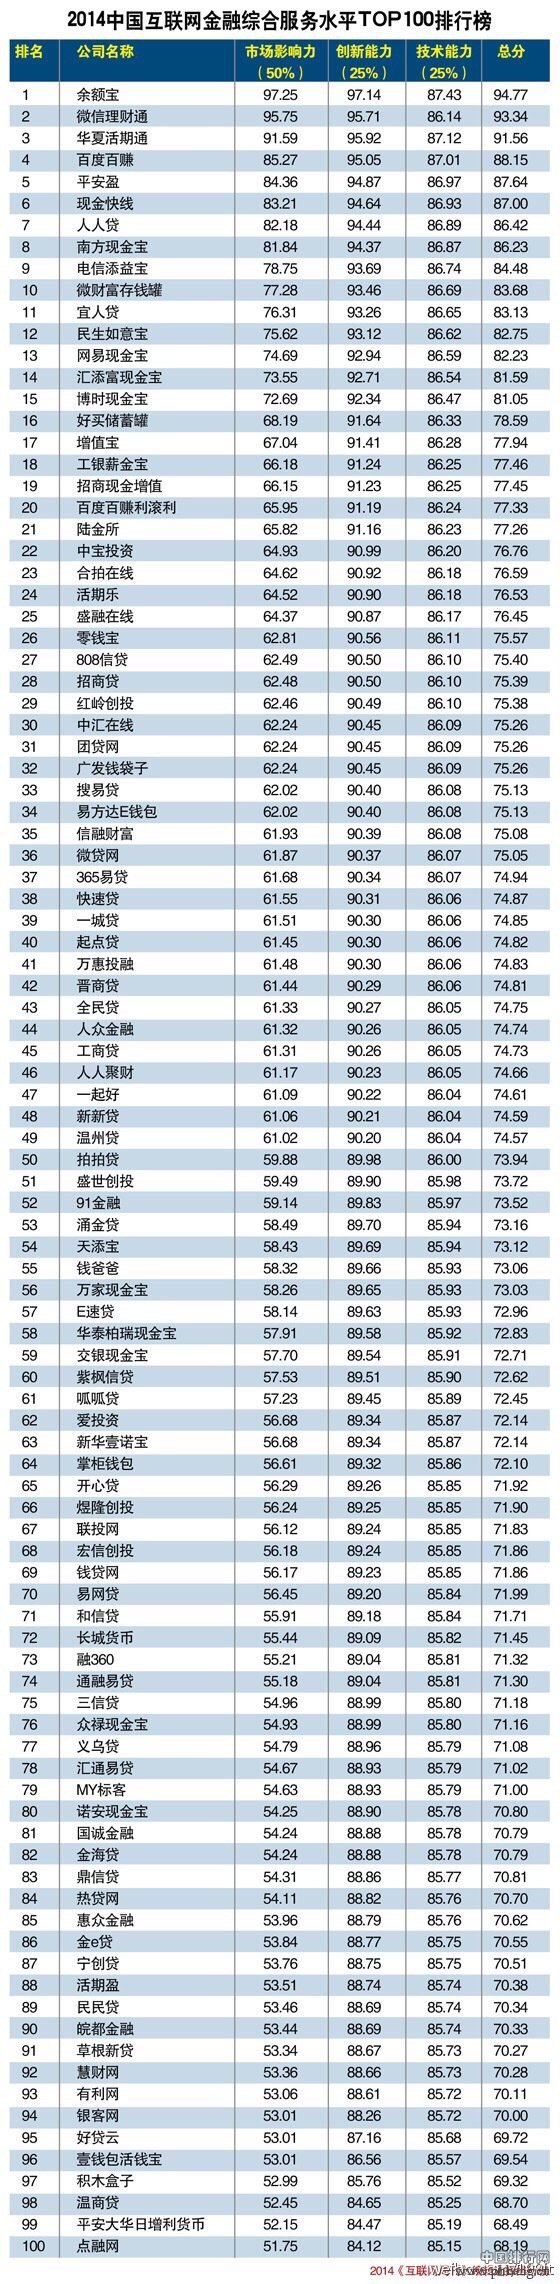 2014中国互联网金融综合服务水平排行榜TOP100